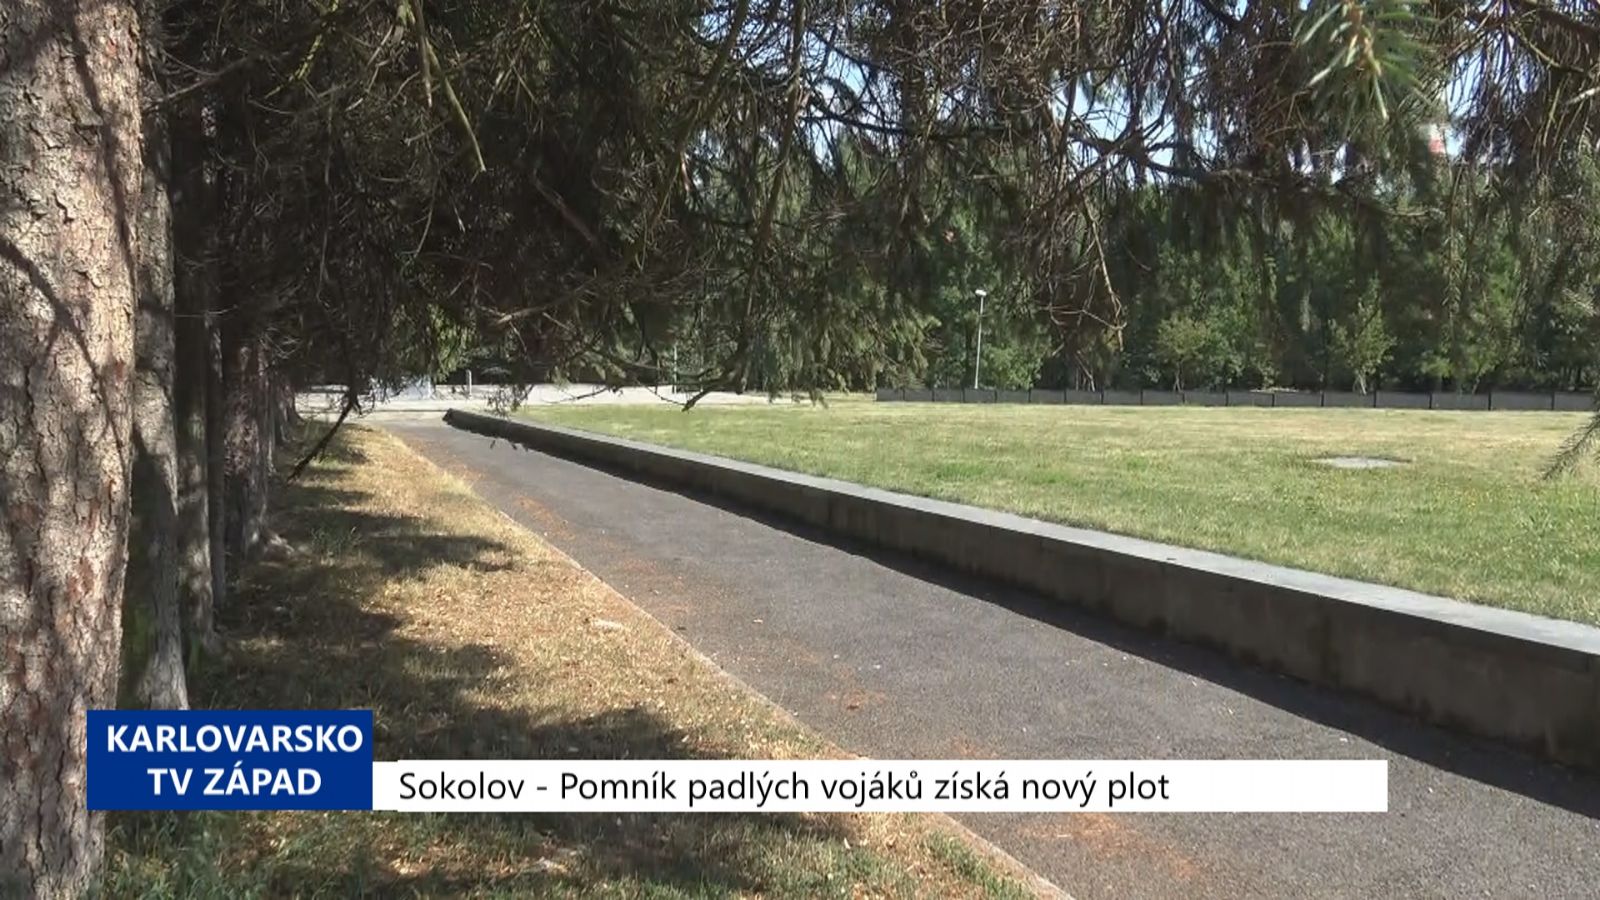 Sokolov: Pomník padlých vojáků získá nový plot (TV Západ)